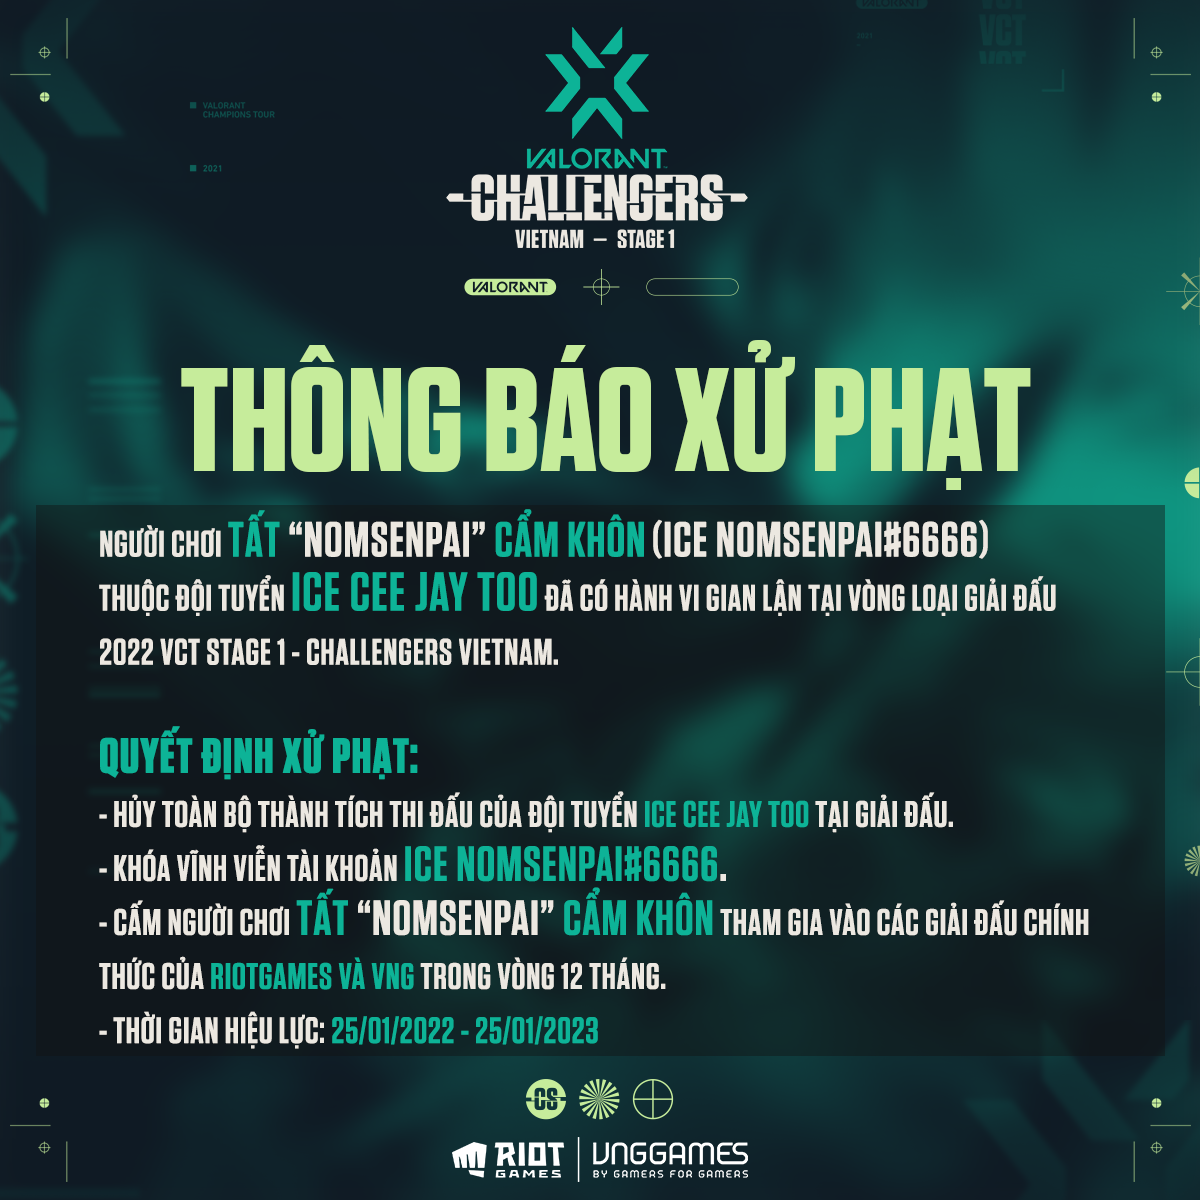 Valorant: Một tuyển thủ Việt bị ban 12 tháng vì dùng cheat hack trong giải đấu, cộng đồng vẫn chê ‘phạt hơi nhẹ’